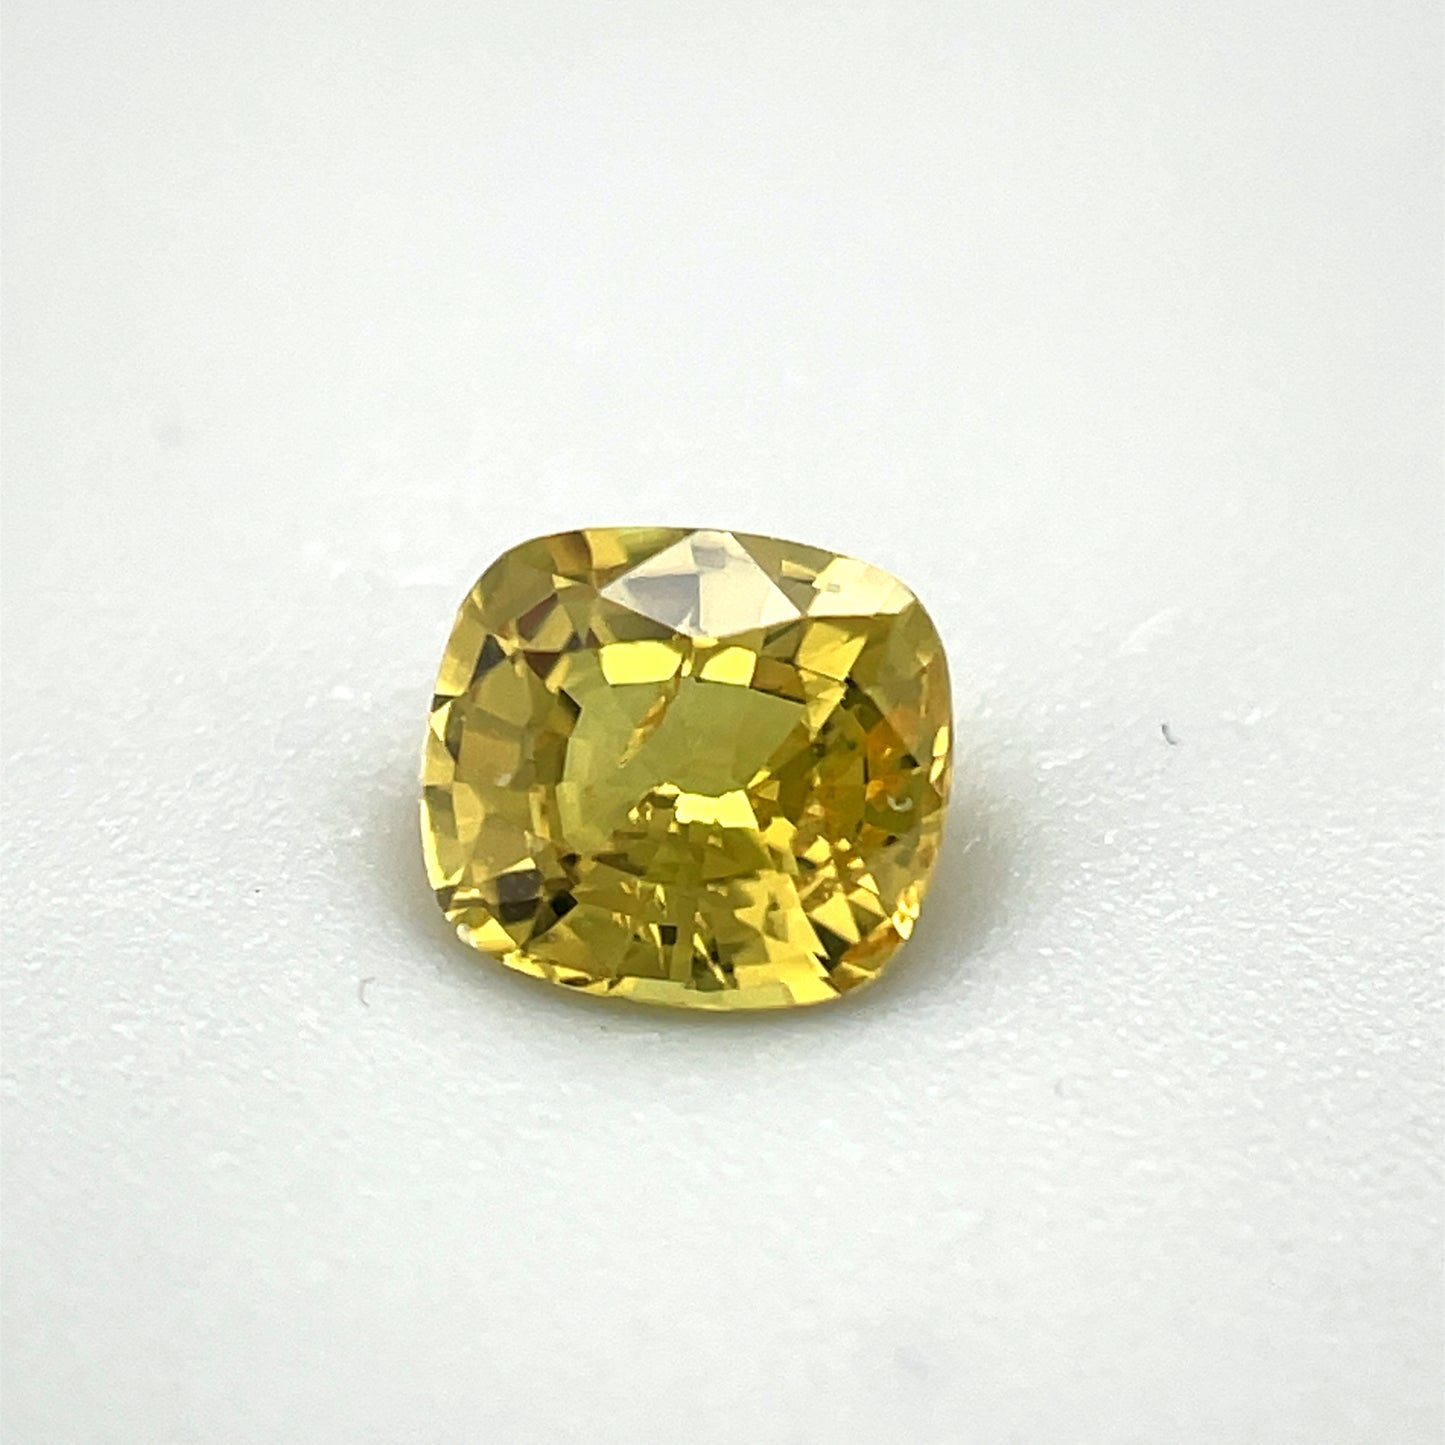 Saphir, Gelb, Kissen, 0,55 ct., 4,8x4,4x2,8 mm